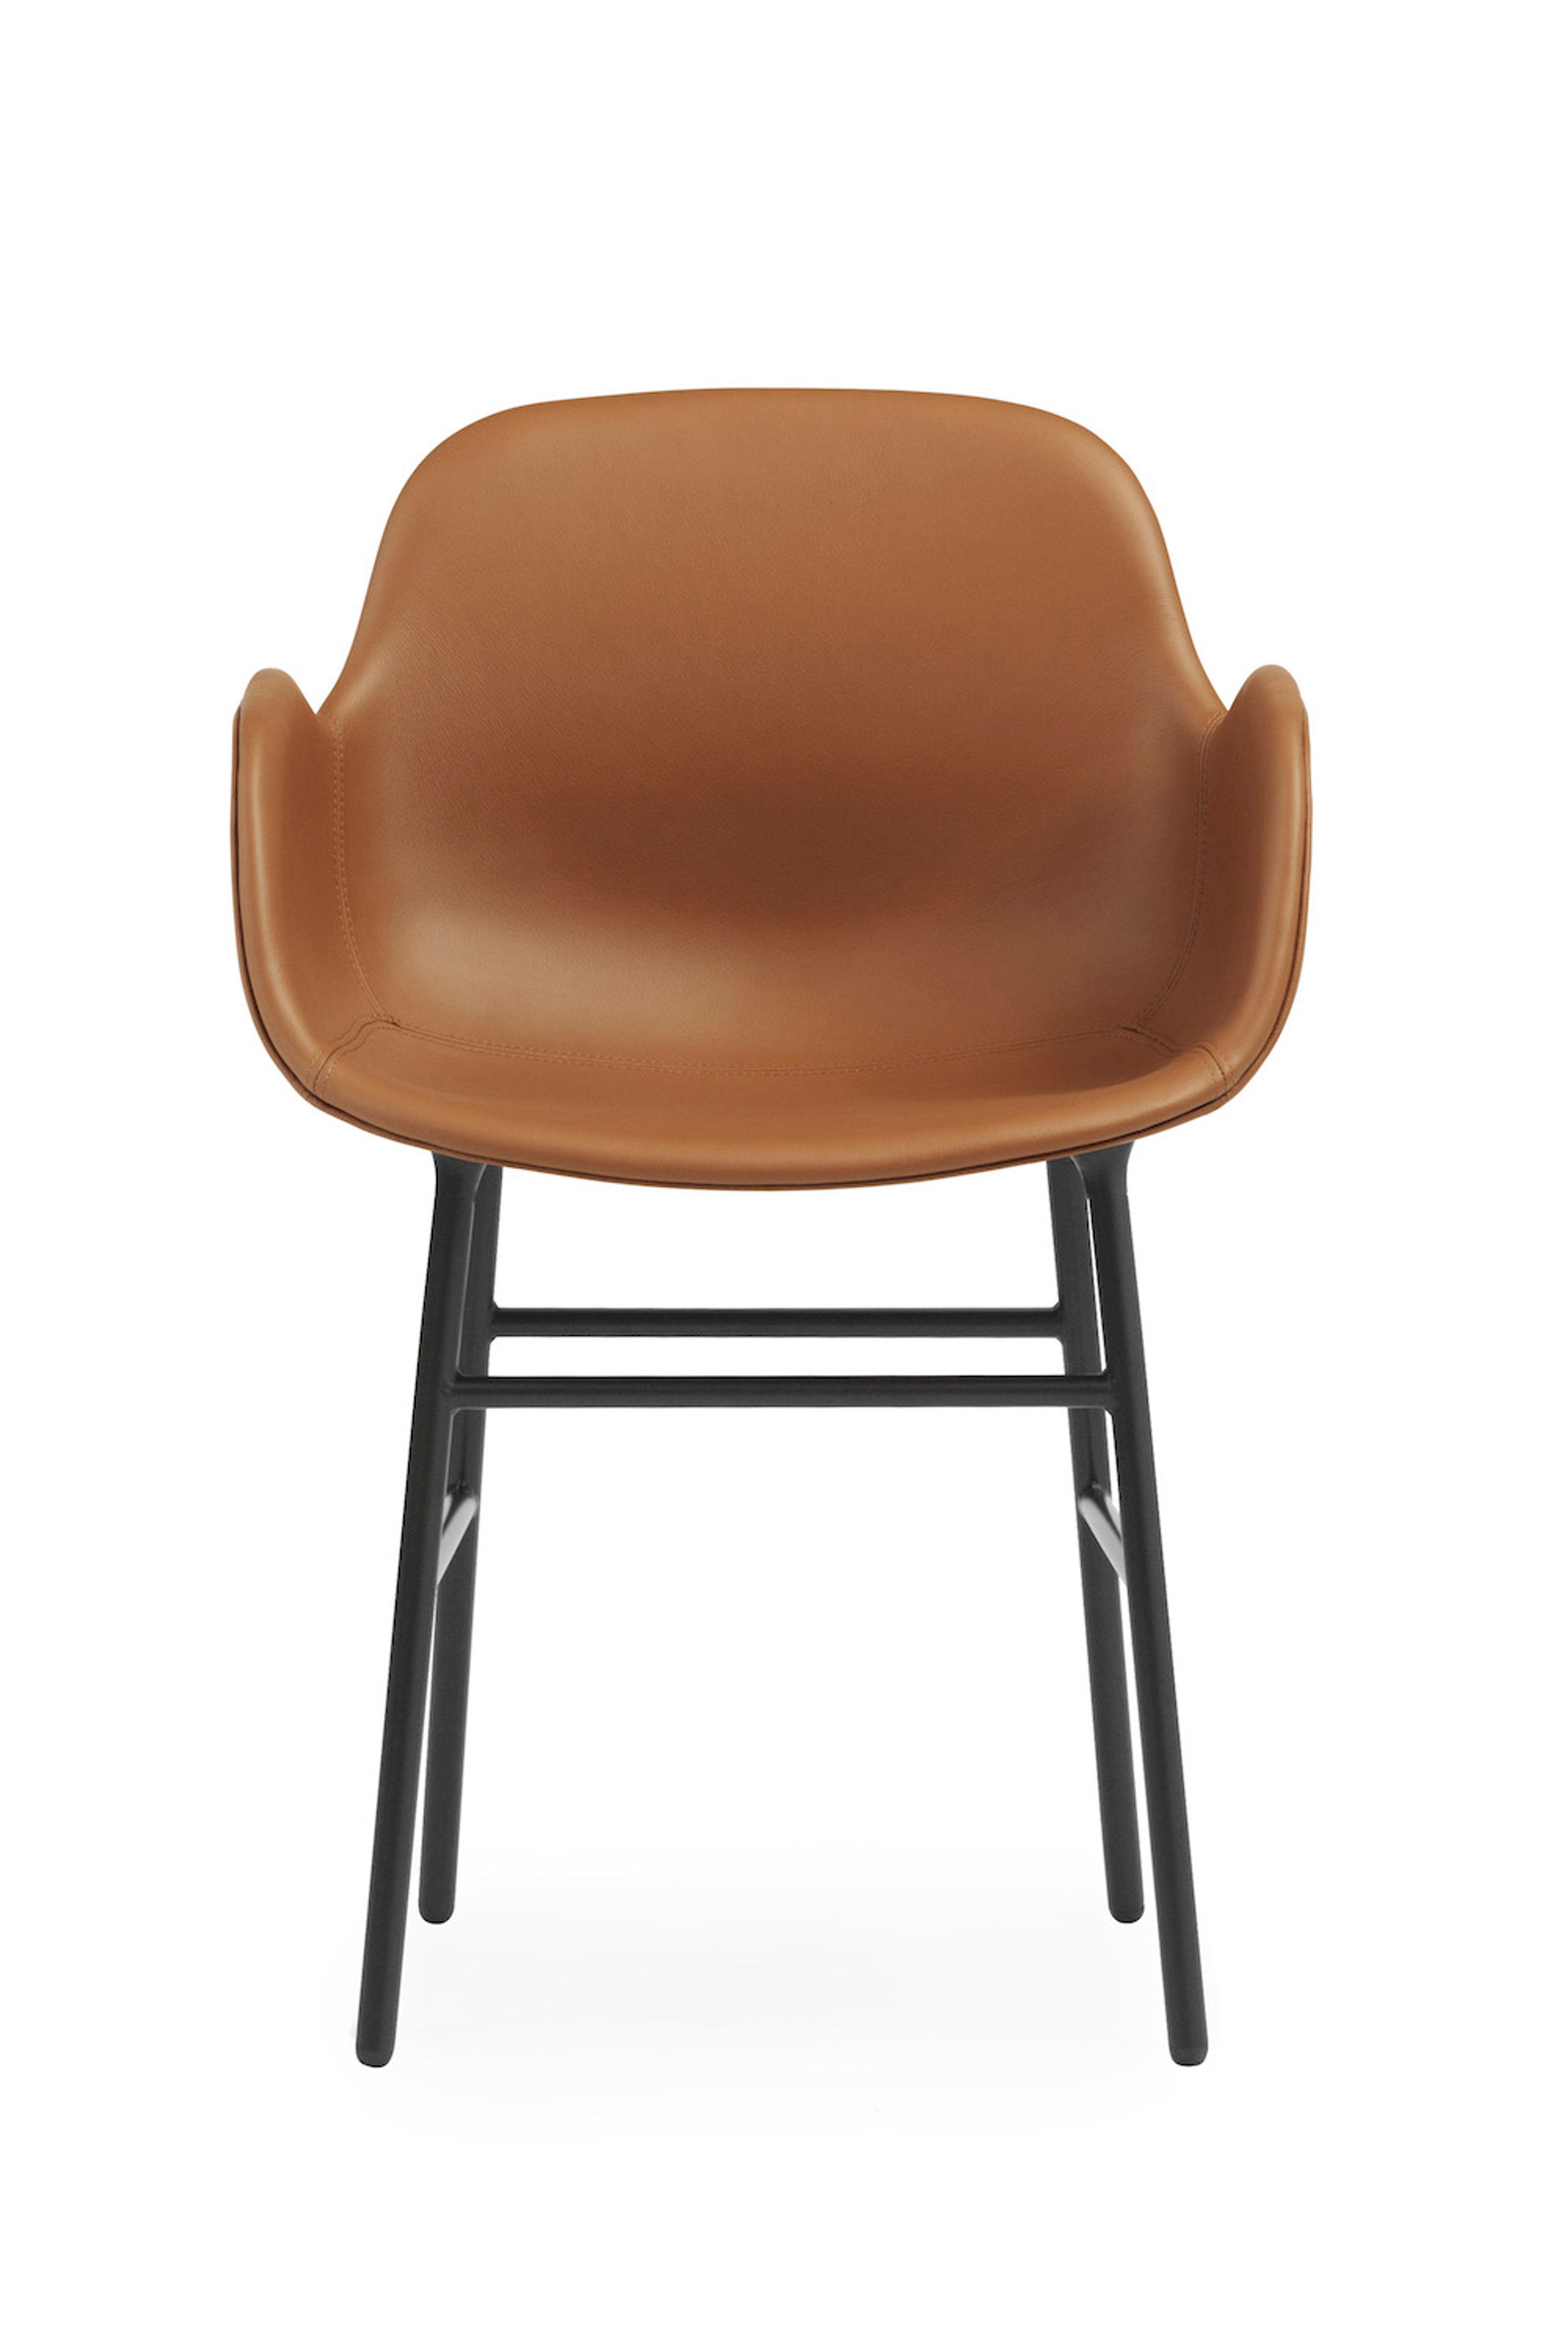 Normann Copenhagen - Chaise à manger - Form Armchair - Full Upholstery Steel, Chrome & Brass - Stel: Sort Stål / Ultra Leather: 41574 (Brandy) - 41599 (Black)